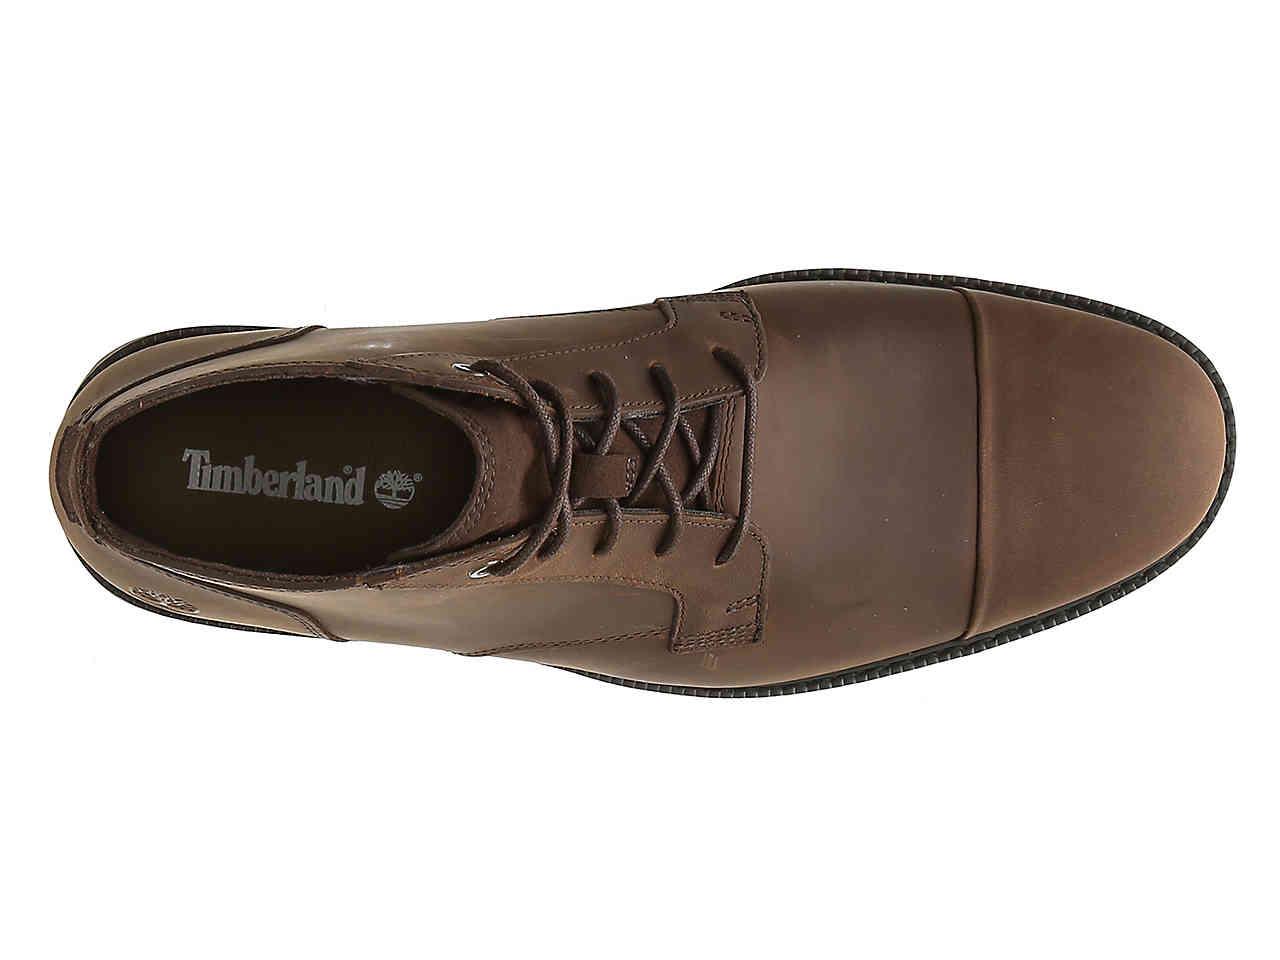 timberland lafayette cap toe leather chukka